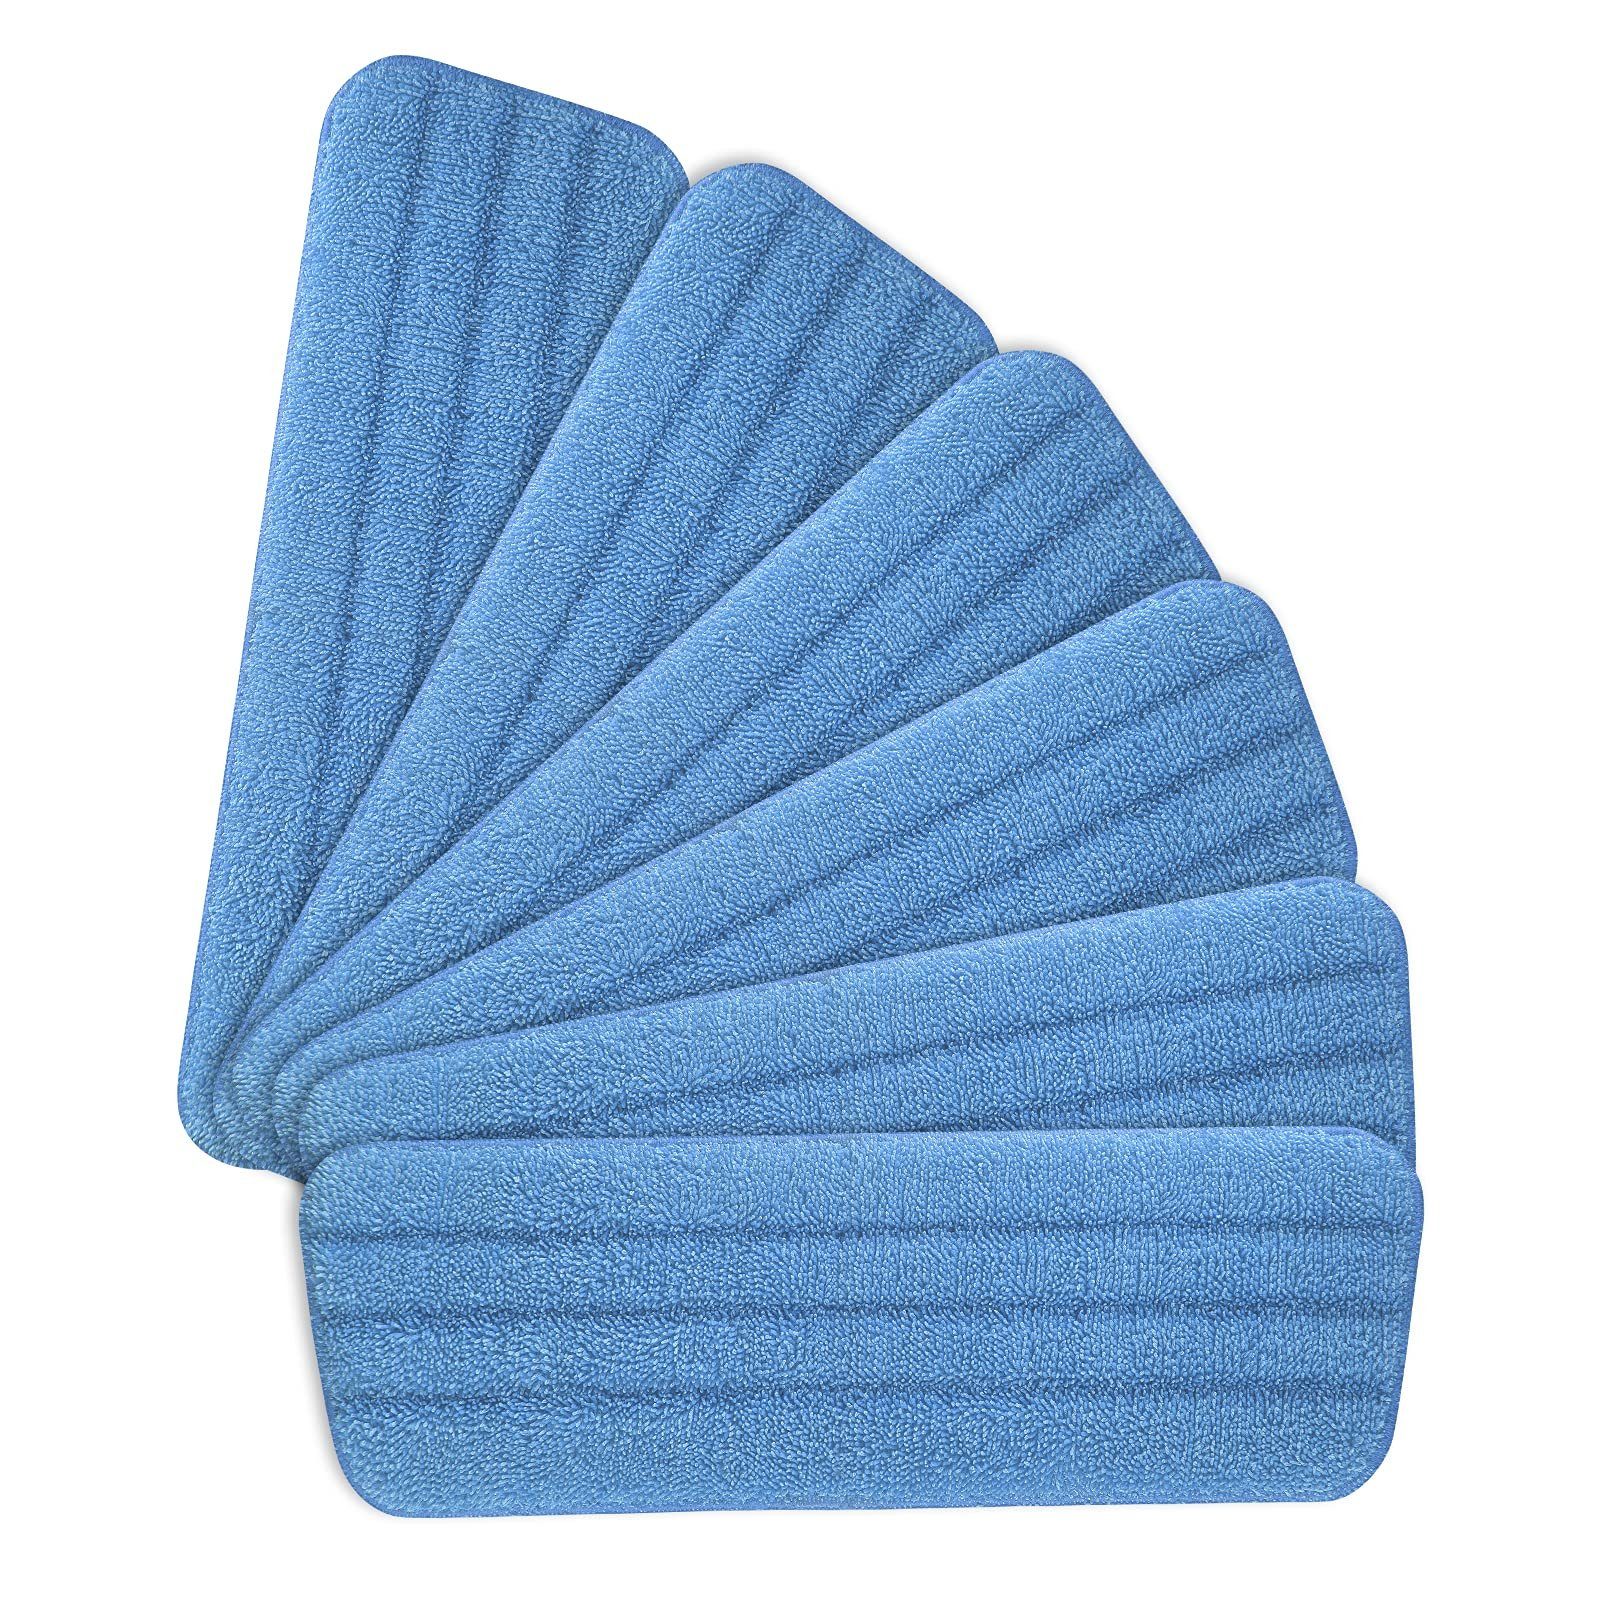 Jormftte Mopp Pads Wischmopp-Reinigungskissen für alle Sprühwischer Reinigungstuch Blau